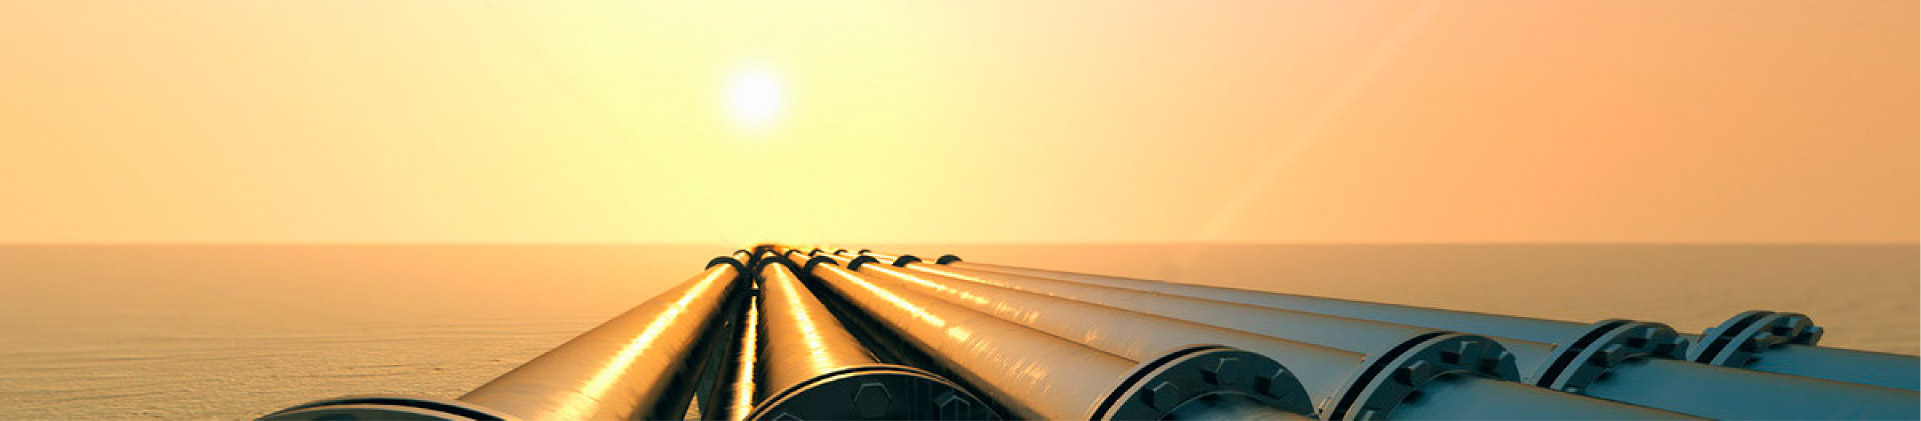 Shell e PetroChina hanno firmato un accordo di LNG di 27 anni